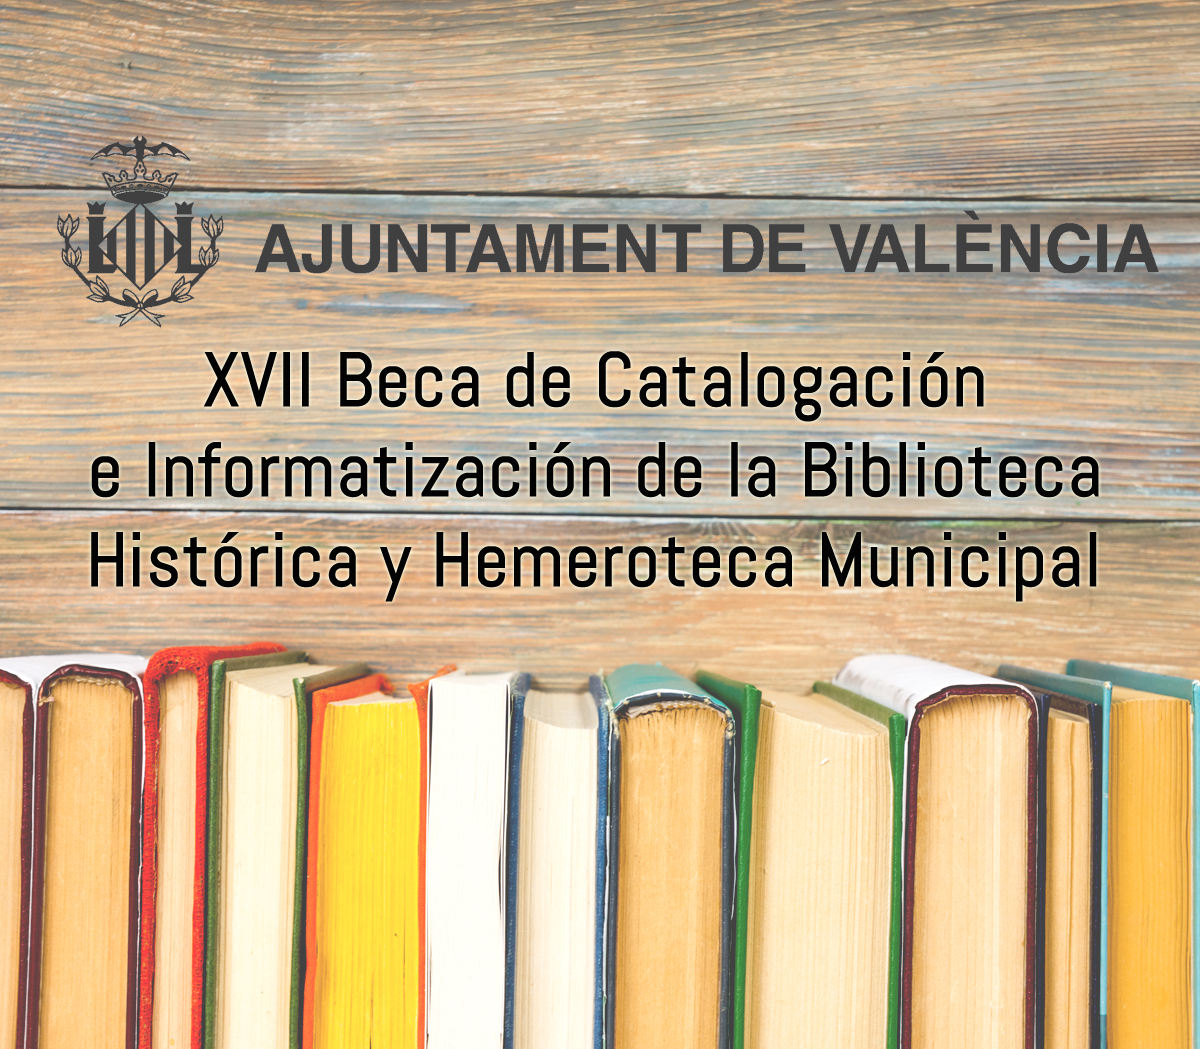 XVII Edición Beca de Catalogación e Informatización de los fondos de la Biblioteca Histórica y Hemeroteca Municipal